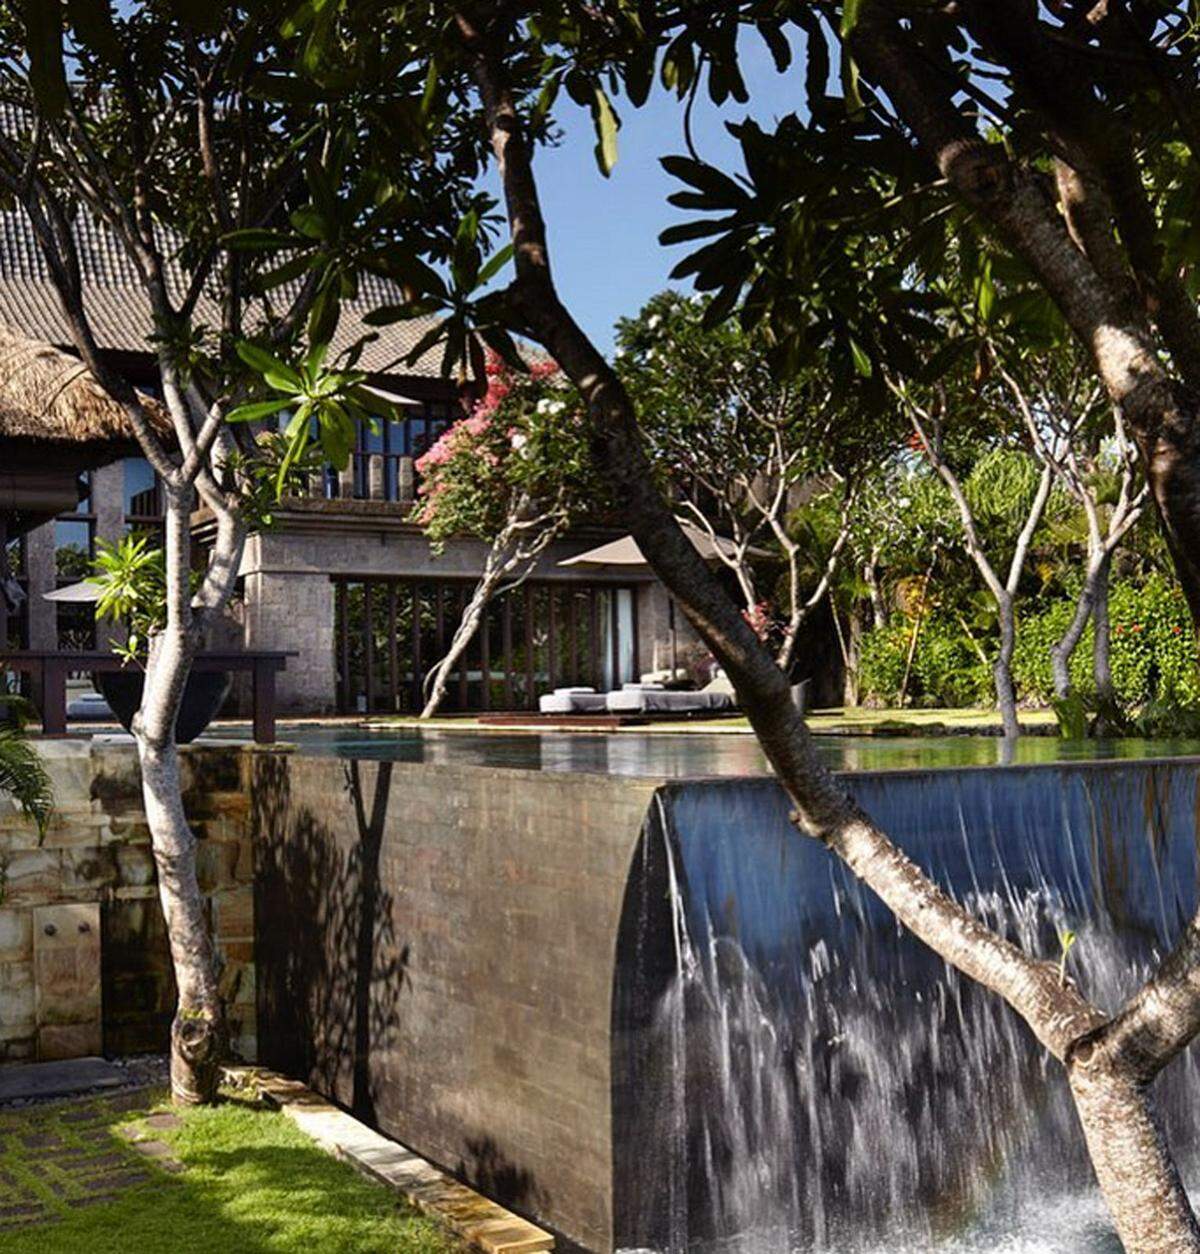 Im Bulgari Hotel auf Bali treffen Italien und Indonesien aufeinander. Denn das in Mailand ansässige Architektur- und Designbüro Antonio Citterio-Patricia Viel hat die Möbel entworfen und mit balinesischen Elementen gemischt.